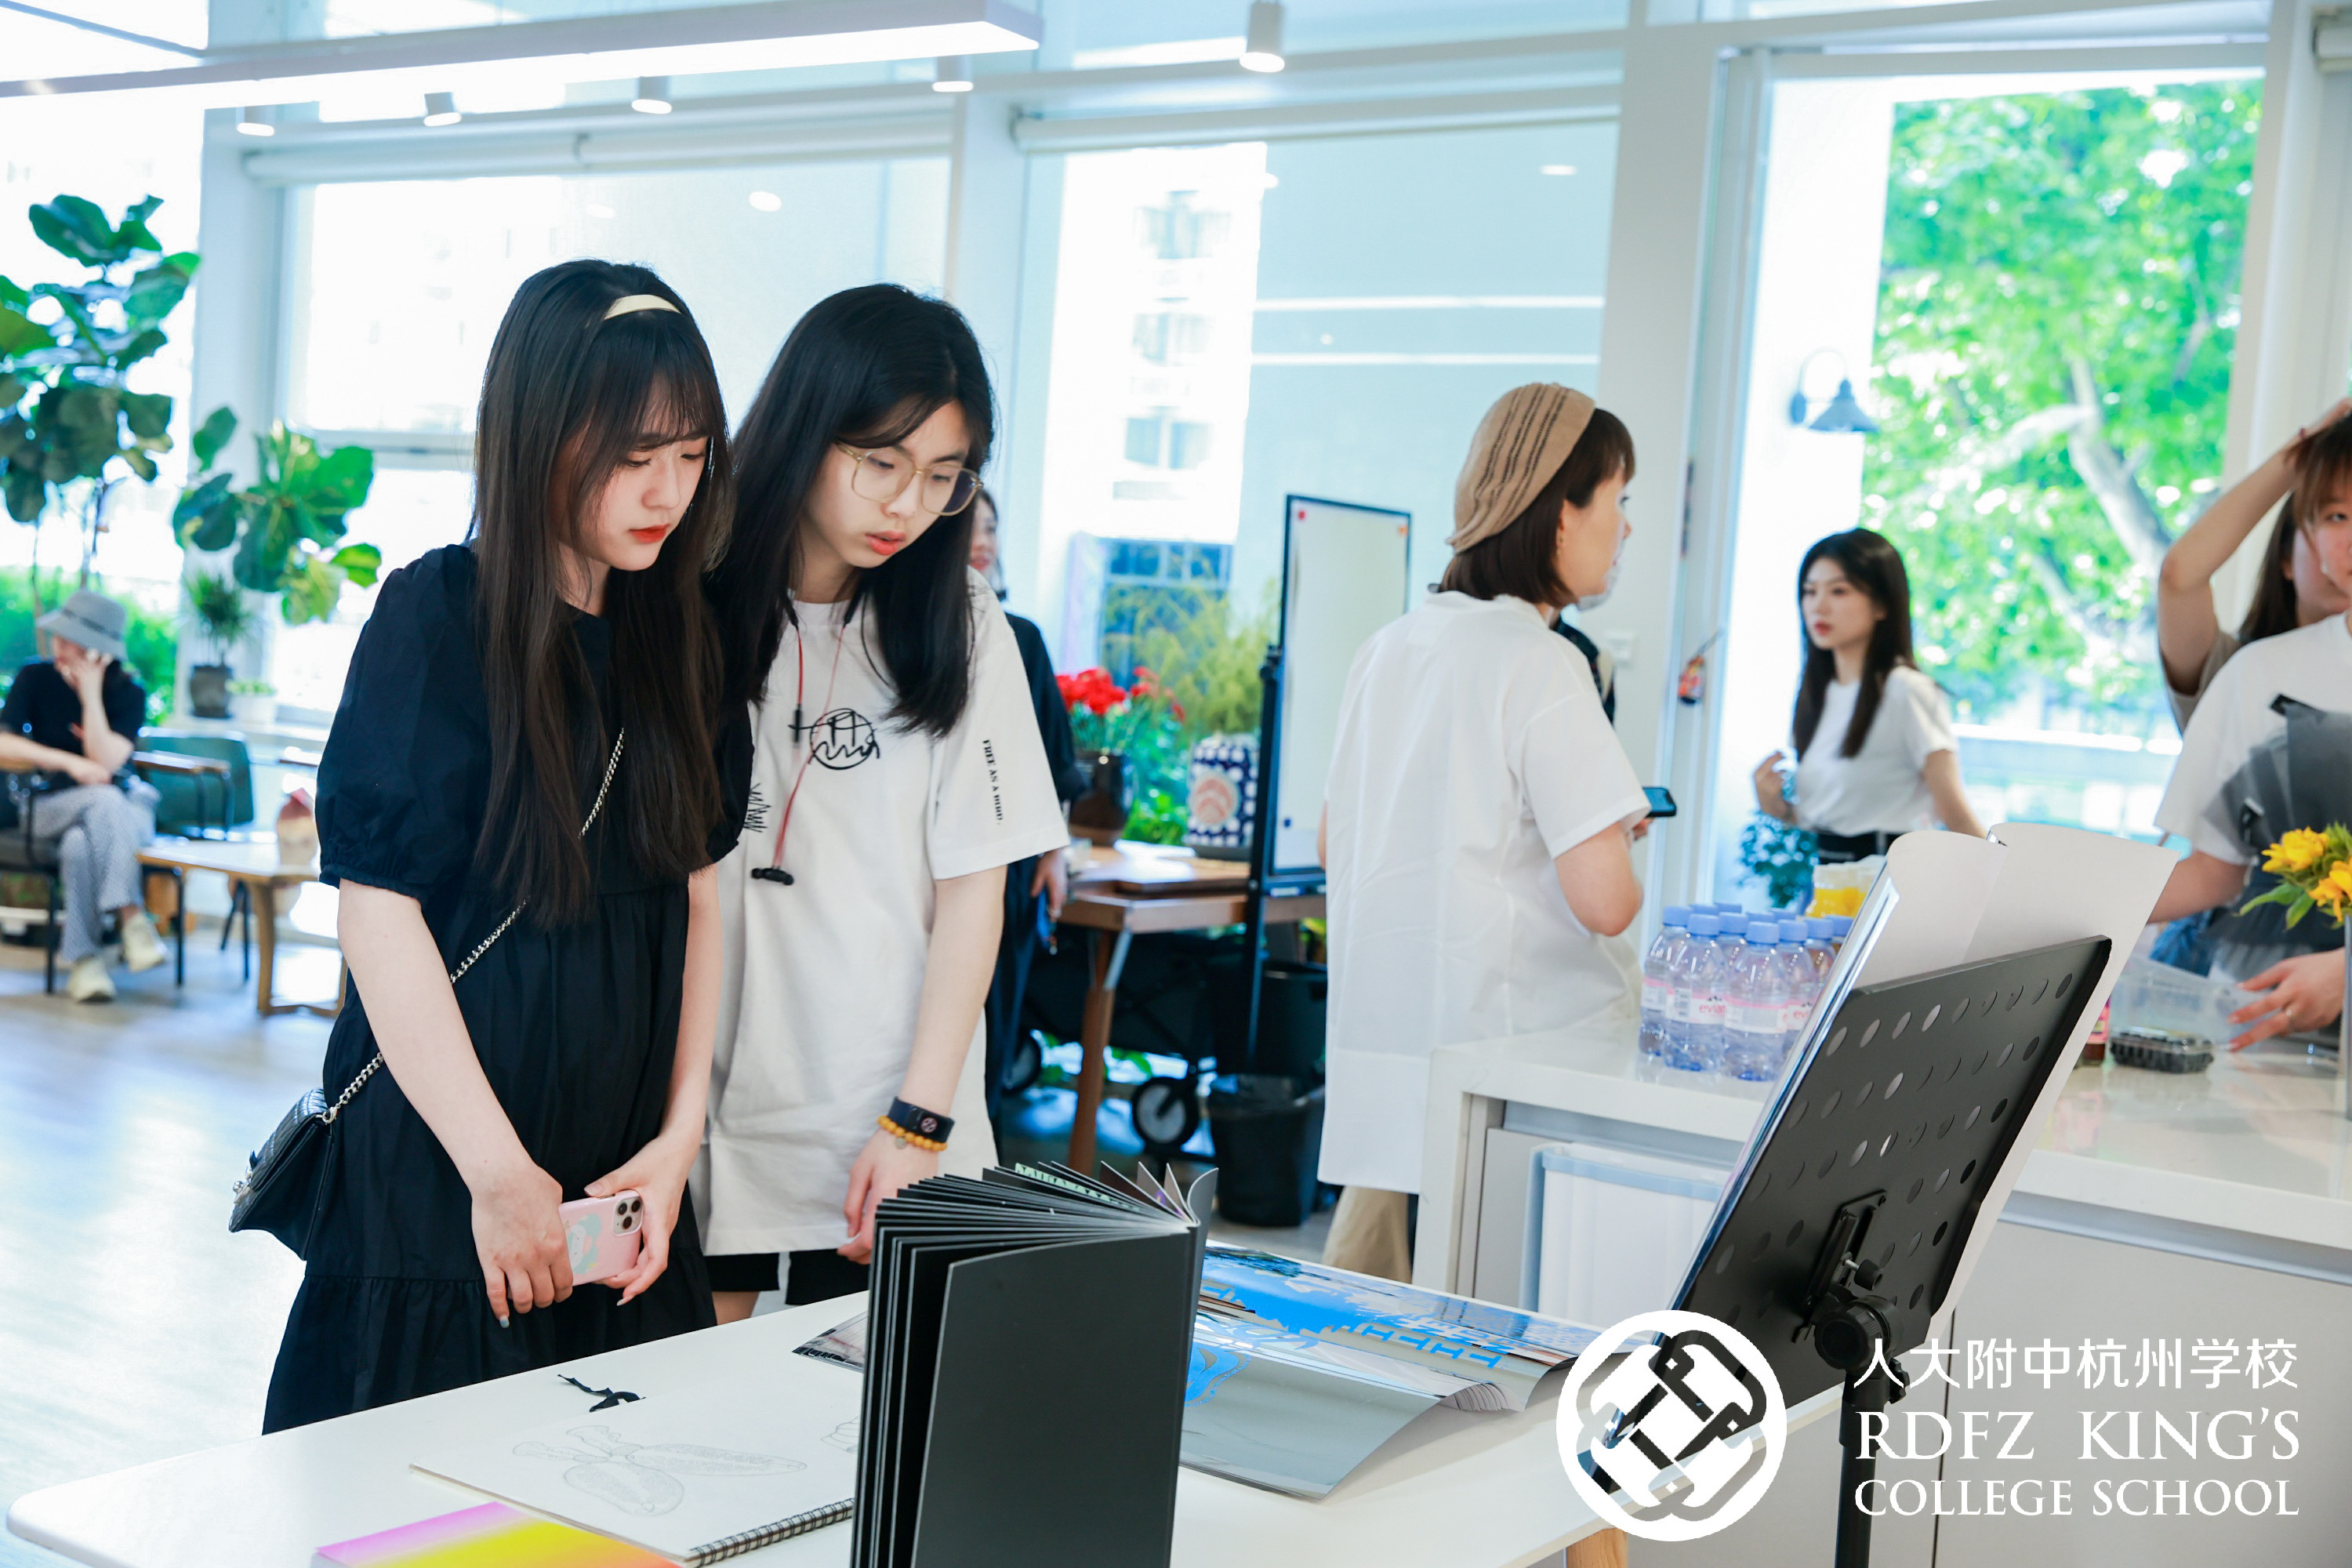 人大附中杭州学校首届国际高中艺术设计展 展出近70件学生作品